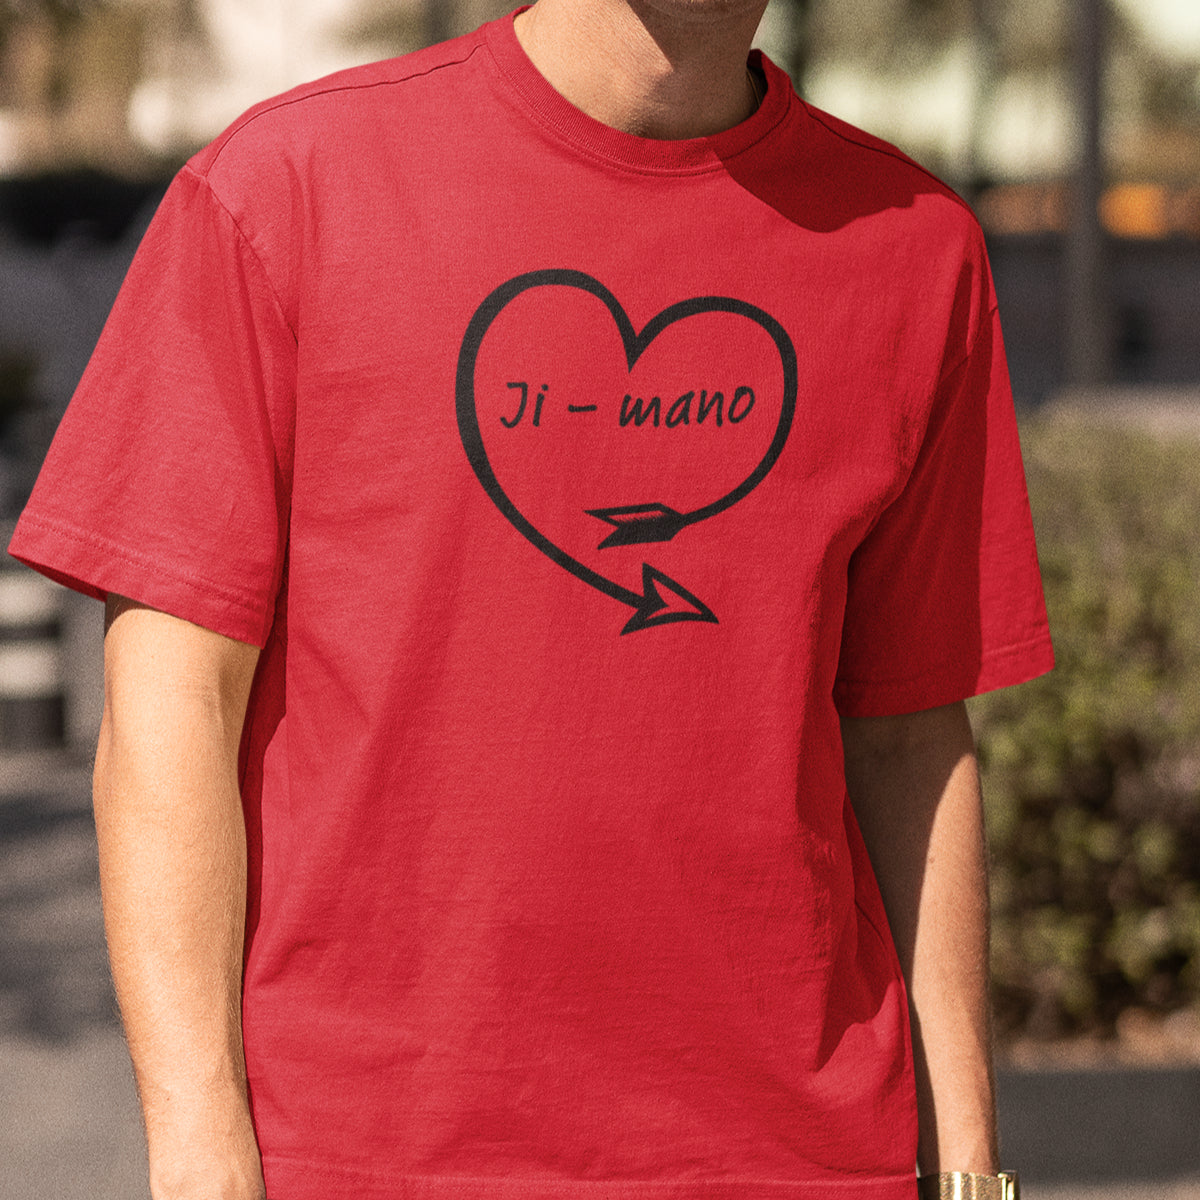 Raudoni marškinėliai poroms "Mano“ Vyriškas dizainas